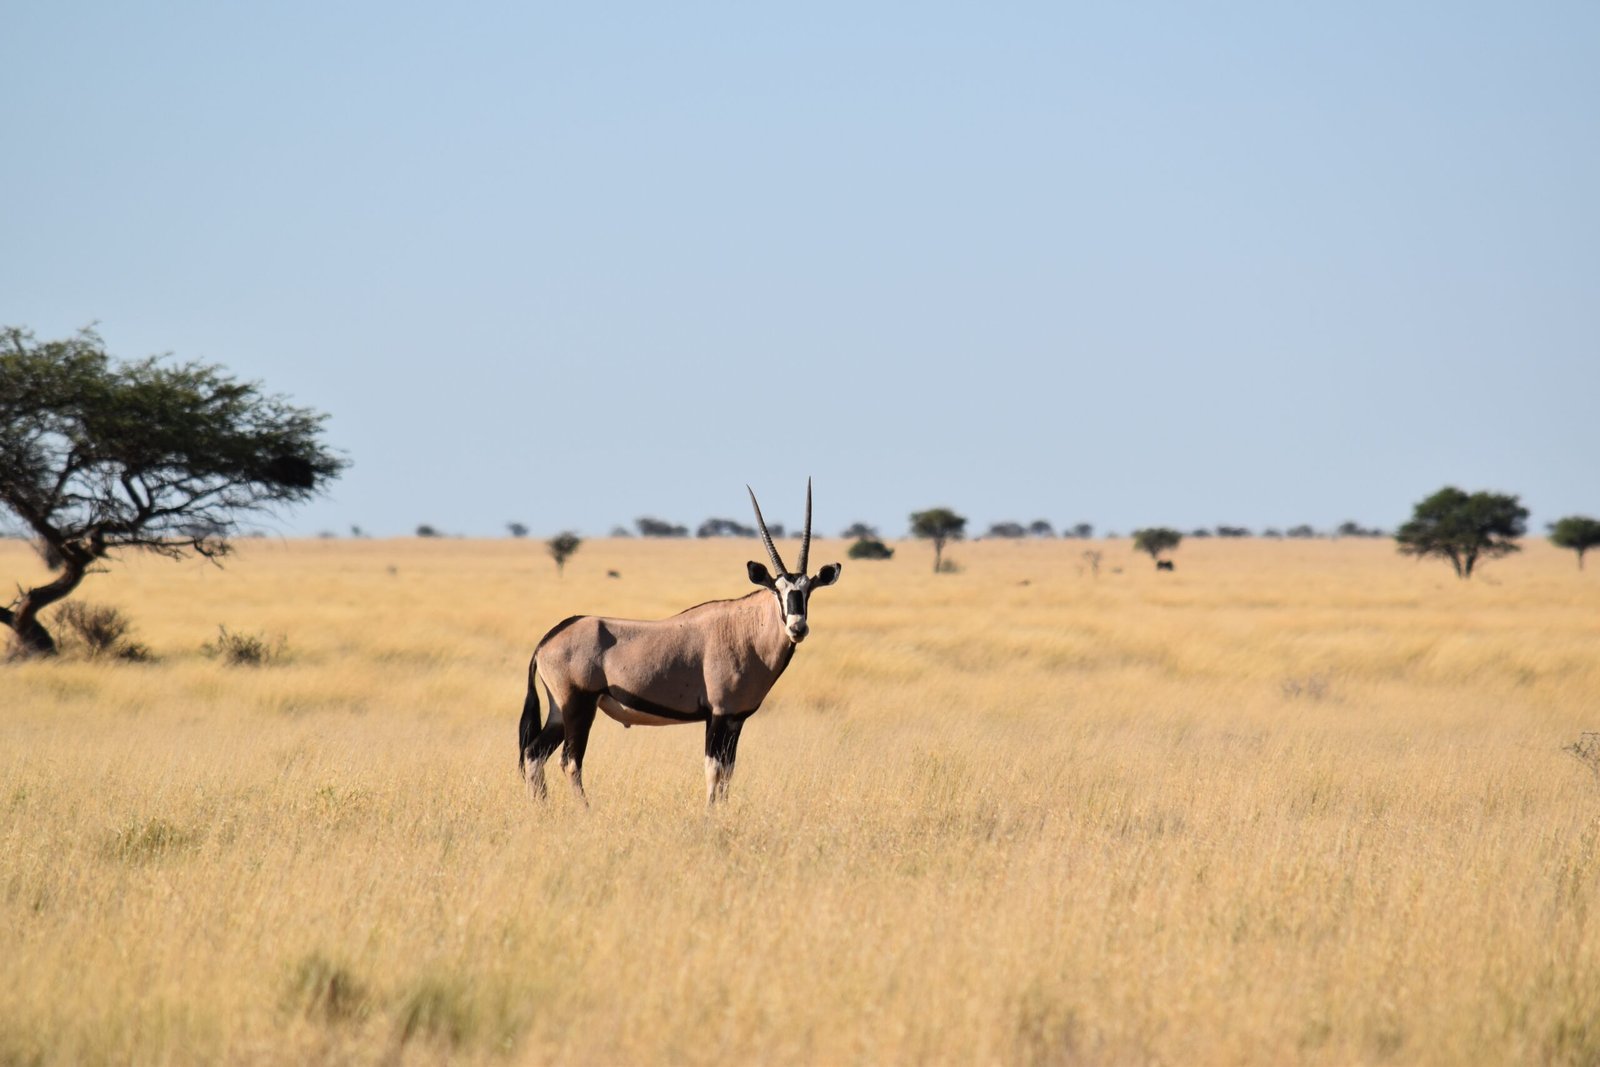 An eland stood still on the savannah plains